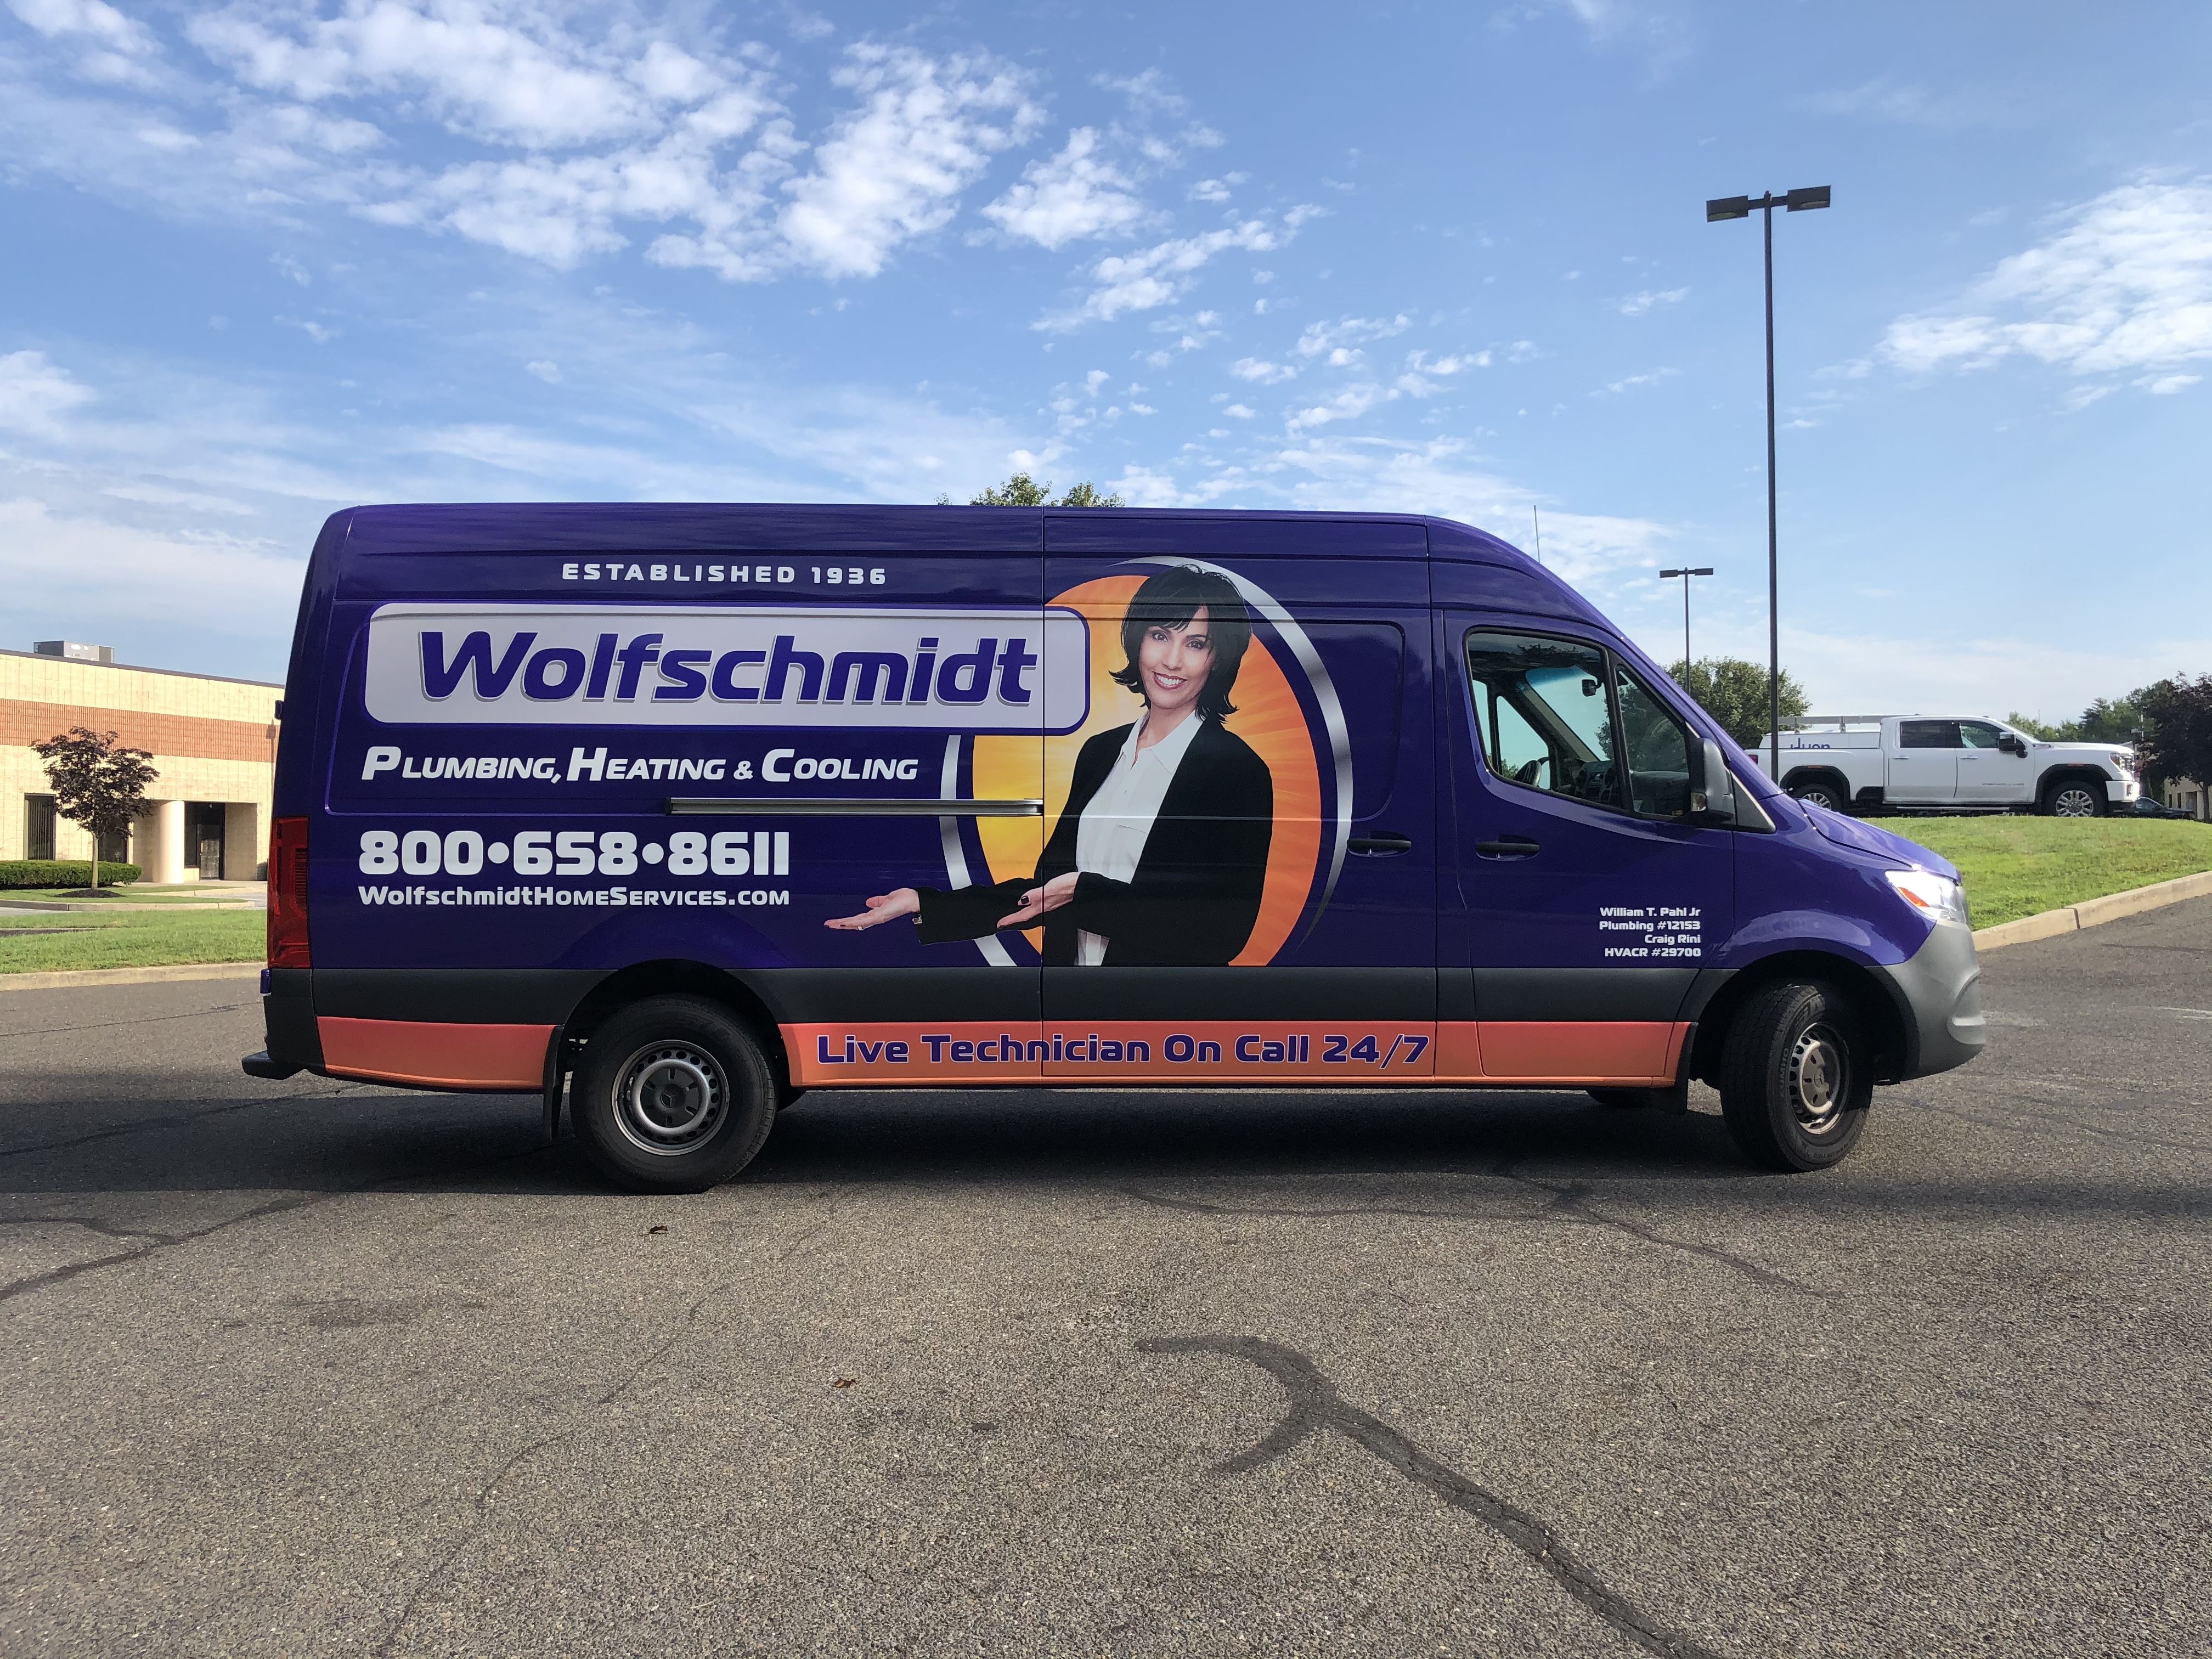 Wolfschmidt Plumbing, Heating & Cooling truck